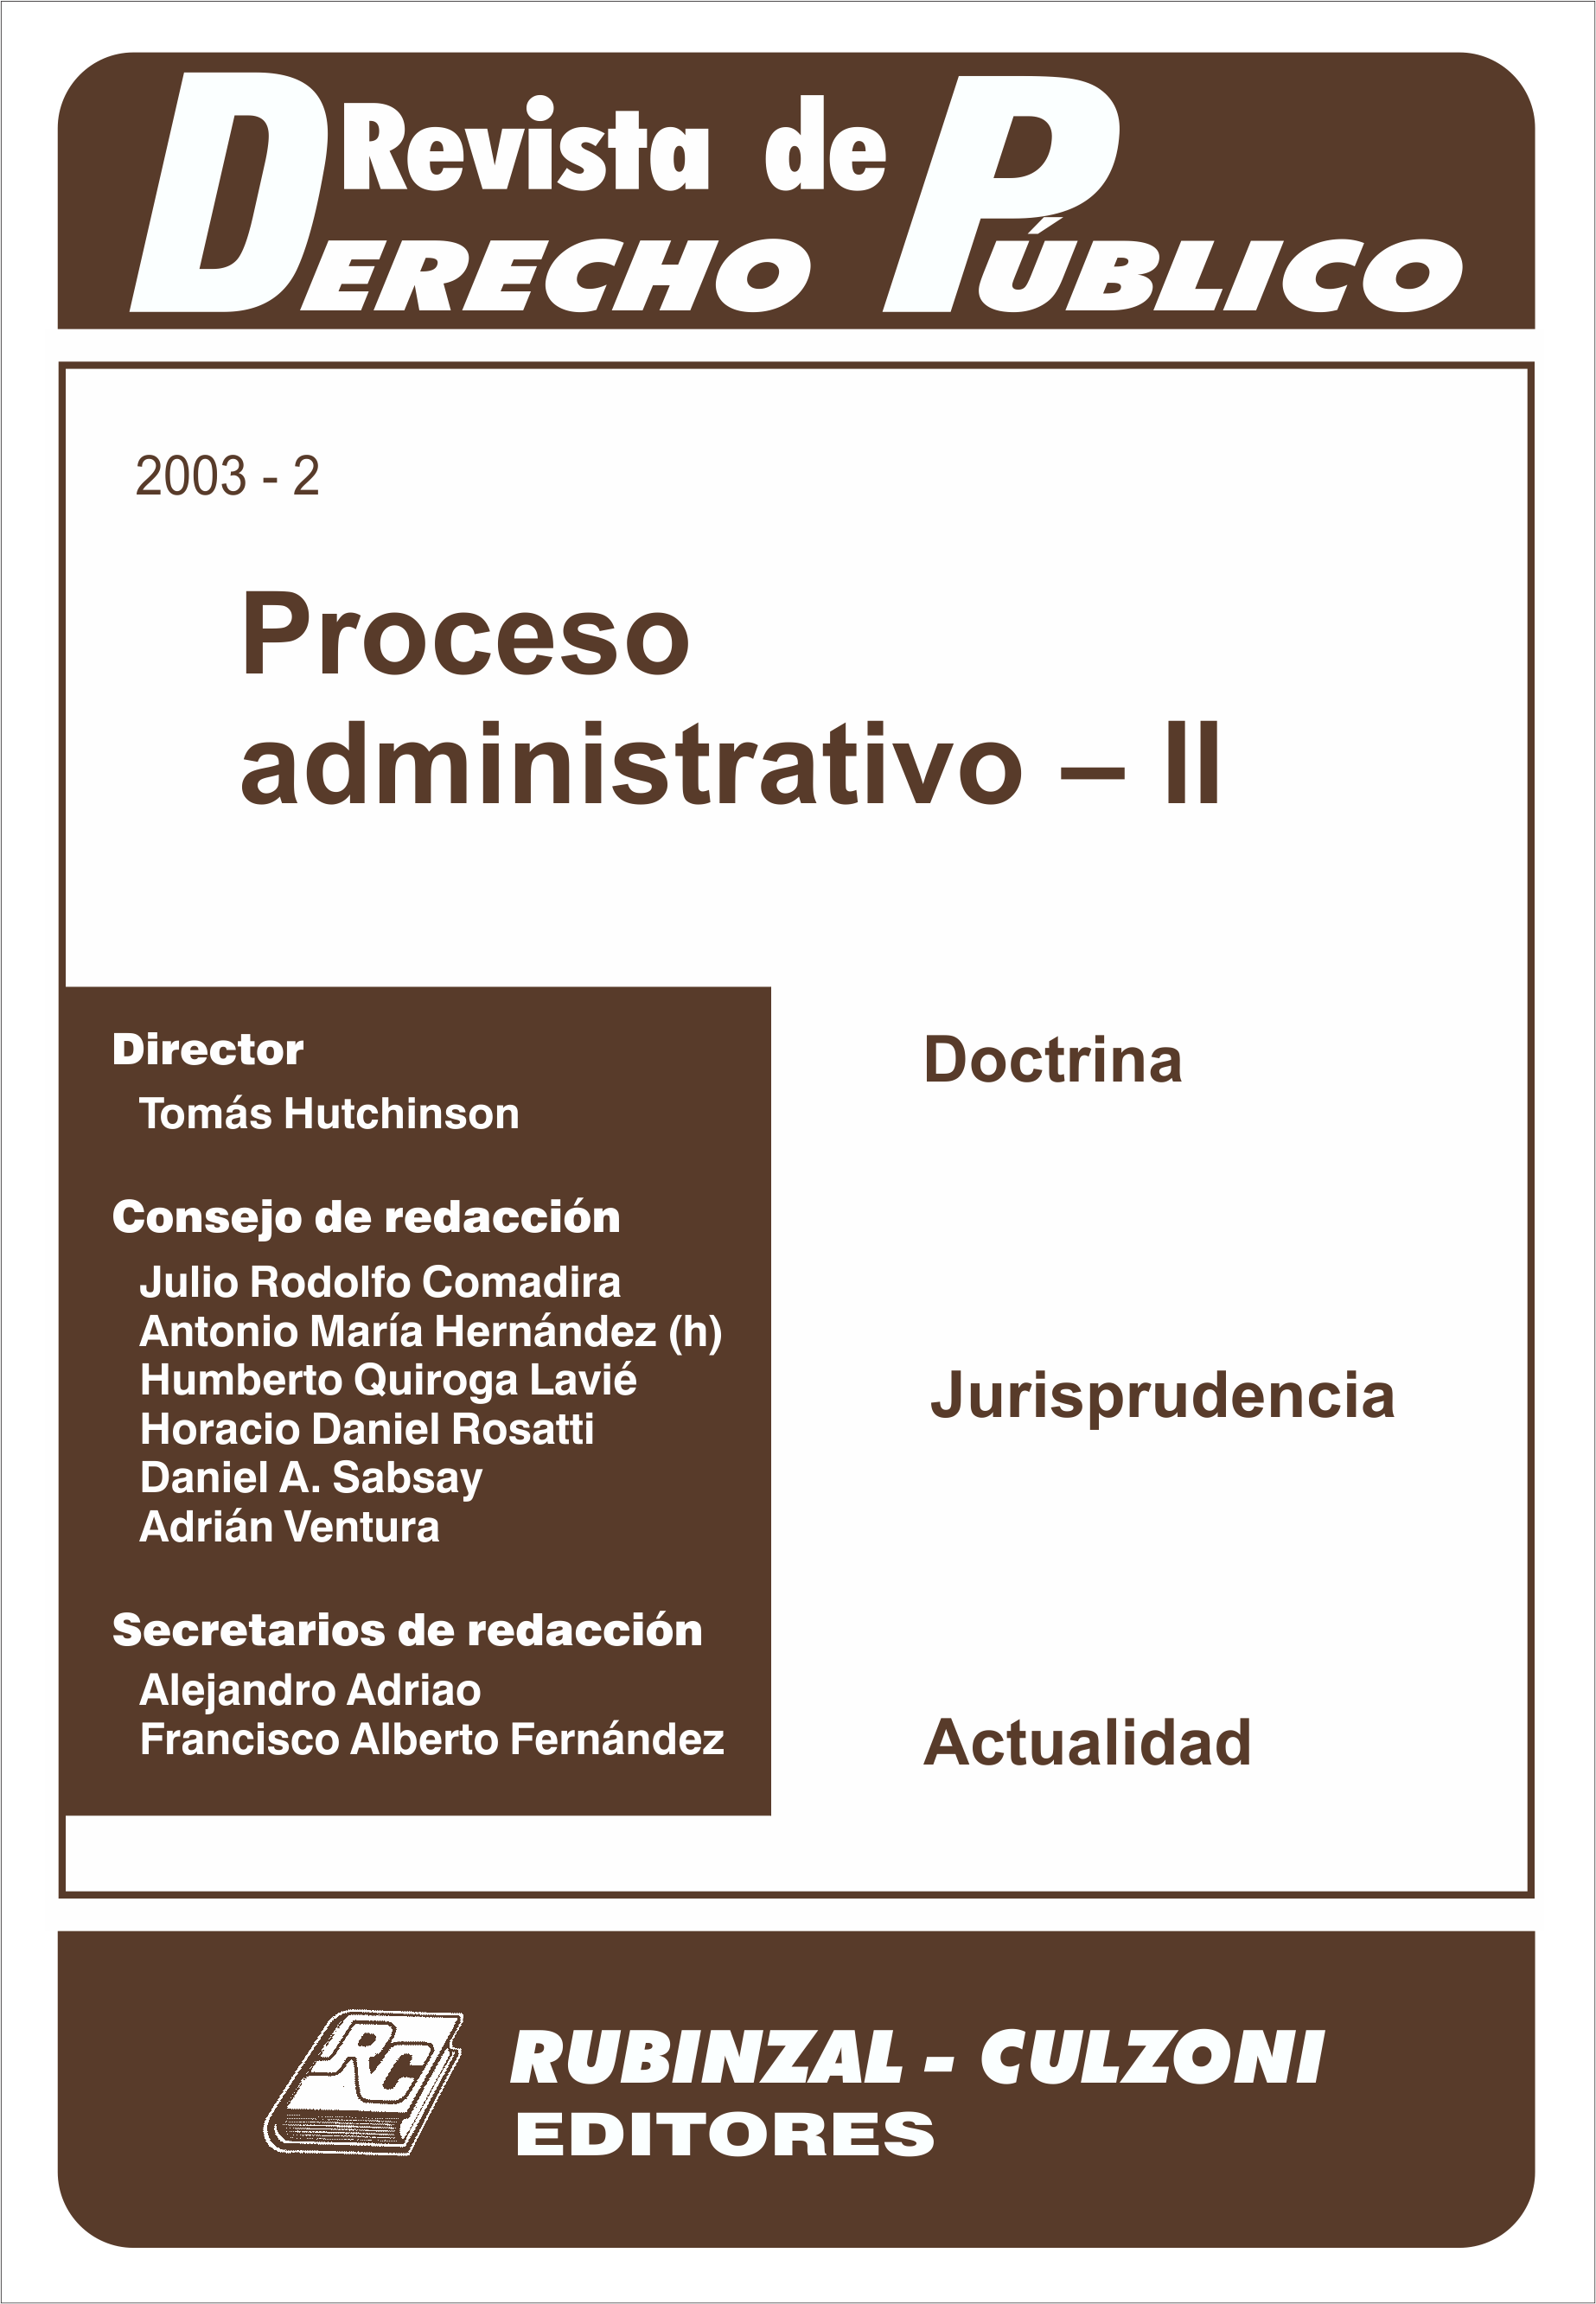 Revista de Derecho Público - Proceso administrativo - II.